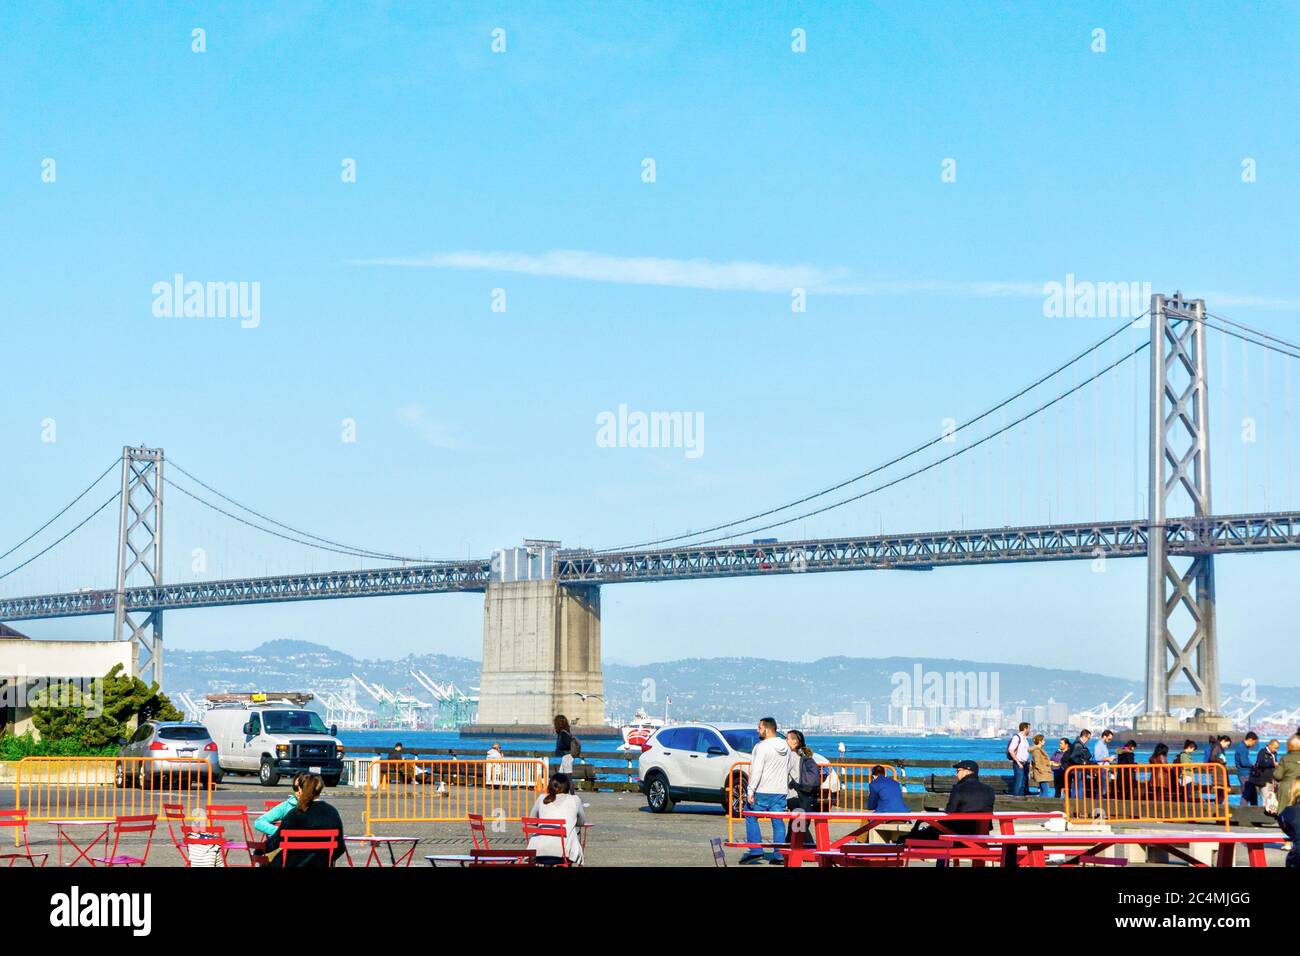 SAN FRANCISCO - 2 AVRIL 2018 : la foule se mêle à l'extérieur de la jetée de San Francisco avec le pont de la baie d'Oakland en arrière-plan. Banque D'Images